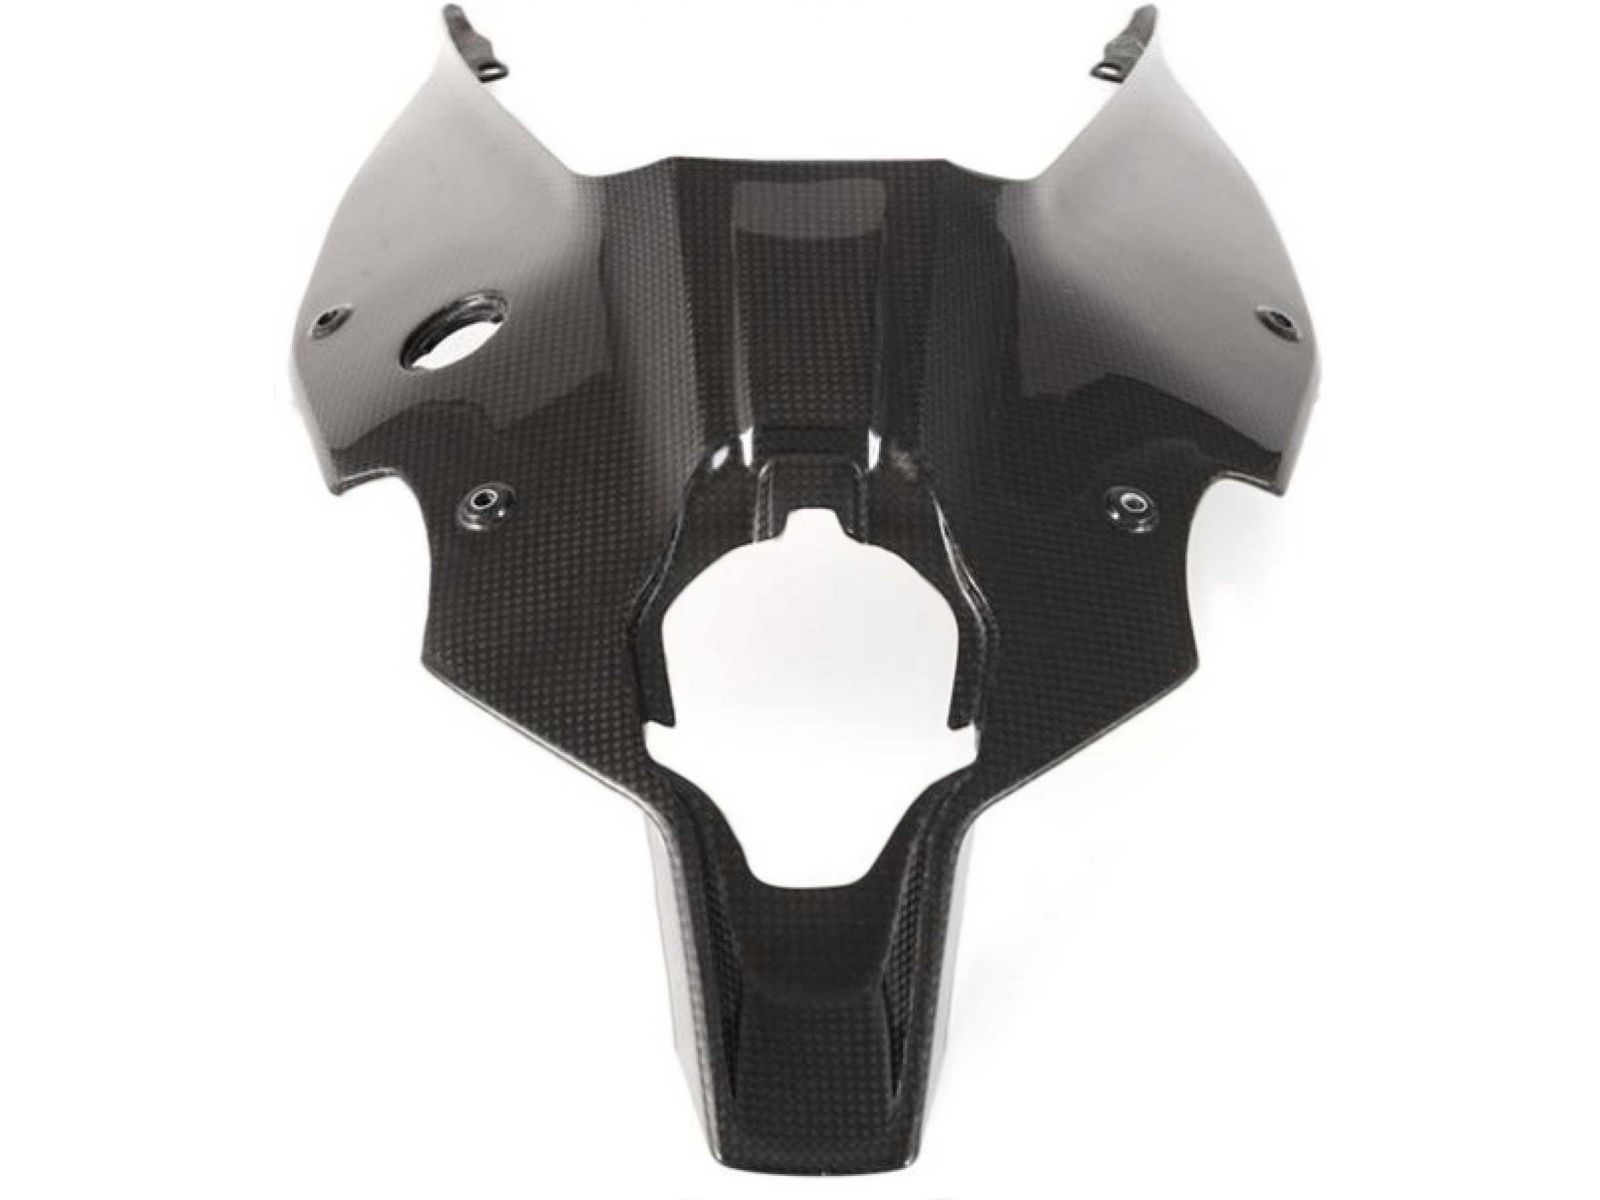  Накладка на хвост нижняя FullSix Carbon для Ducati Panigale V4 18-19